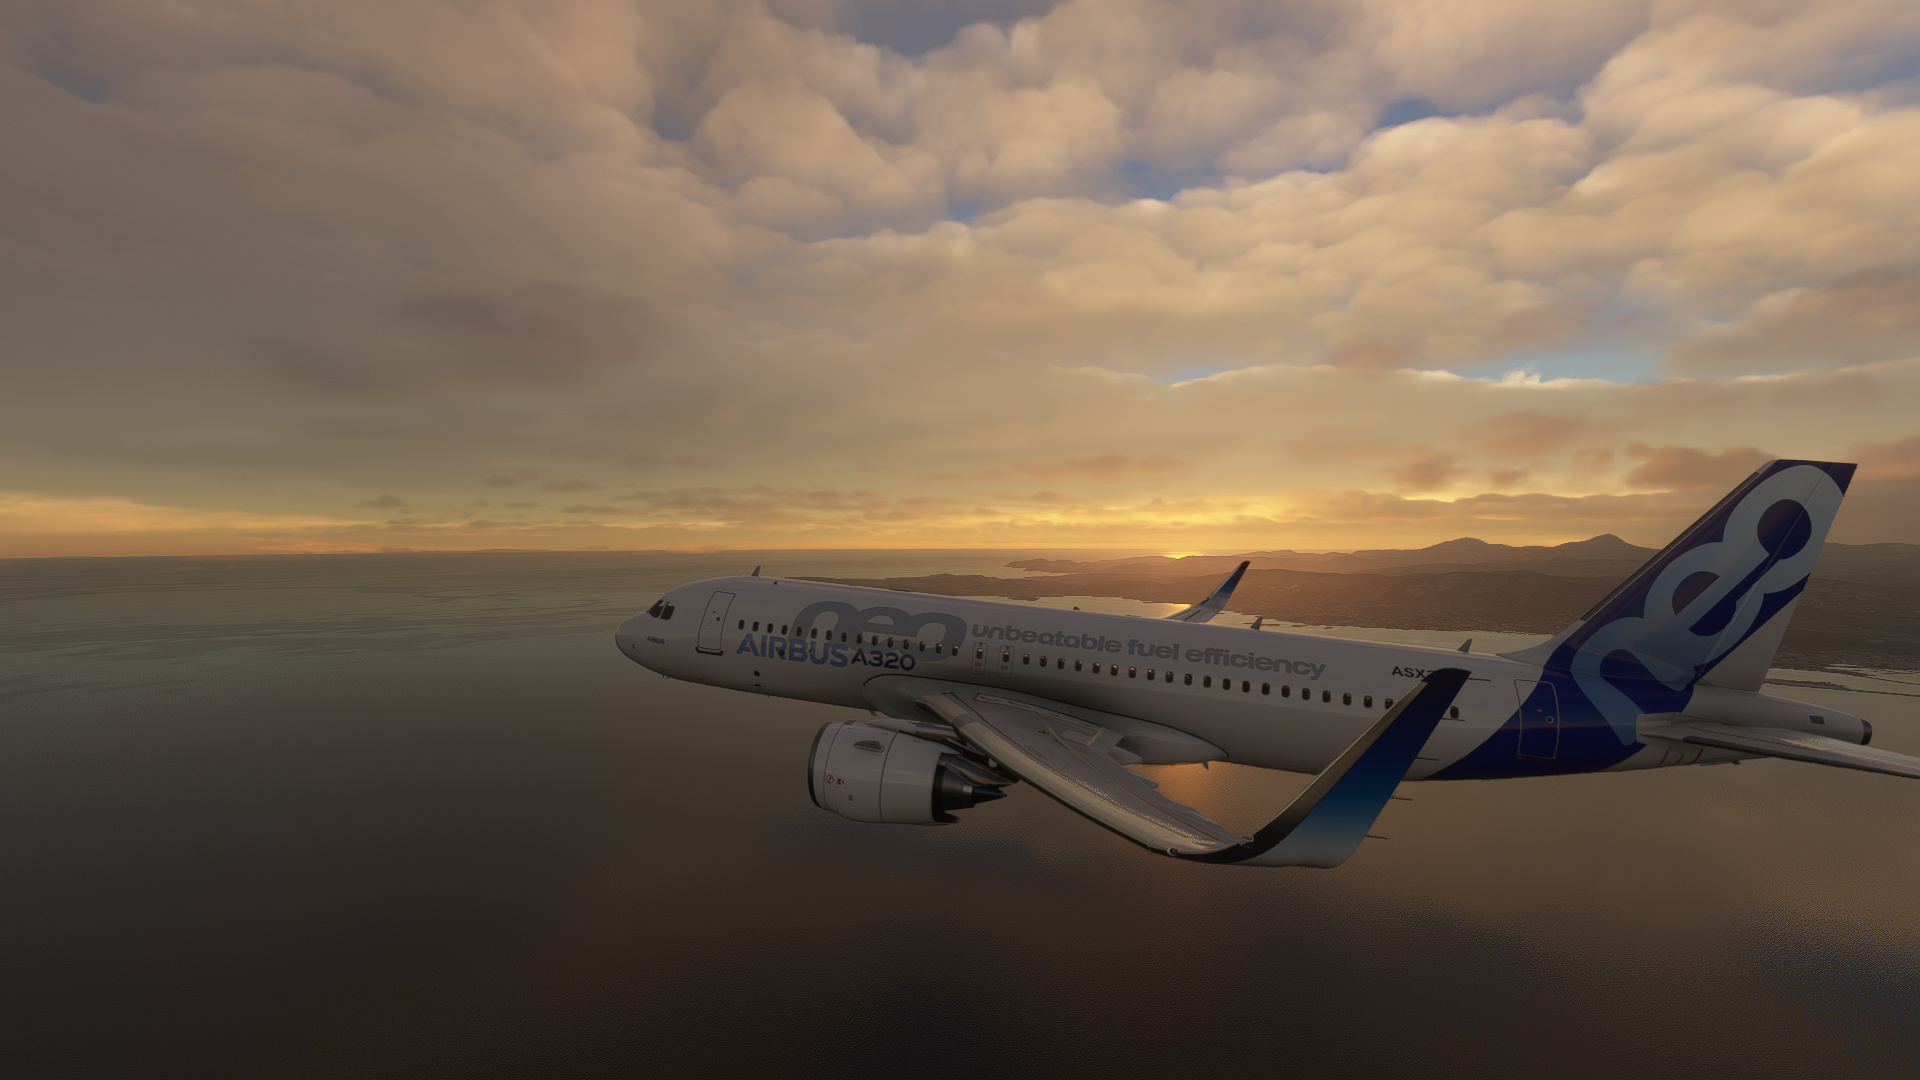 Airbus A320, Microsoft Flight Simulator 2020, Gaming screenshot, Aircraft, 1920x1080 Full HD Desktop